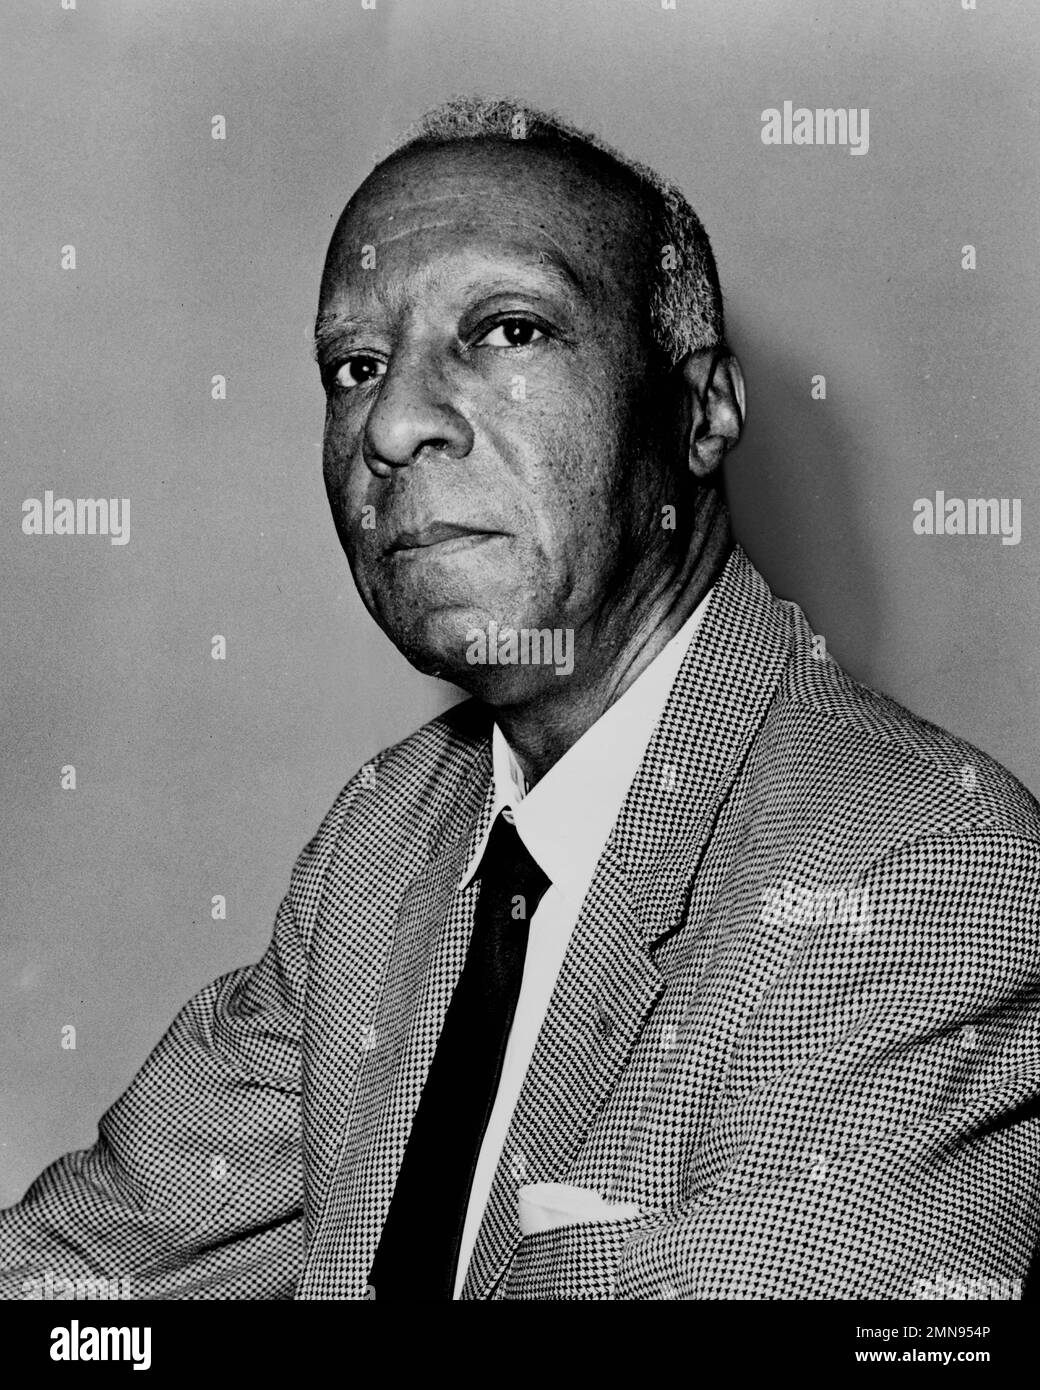 Philip Randolph. Ritratto dell'attivista americano per i diritti civili, Asa Philip Randolph (1889-1979) di John Bottega, 1963 Foto Stock